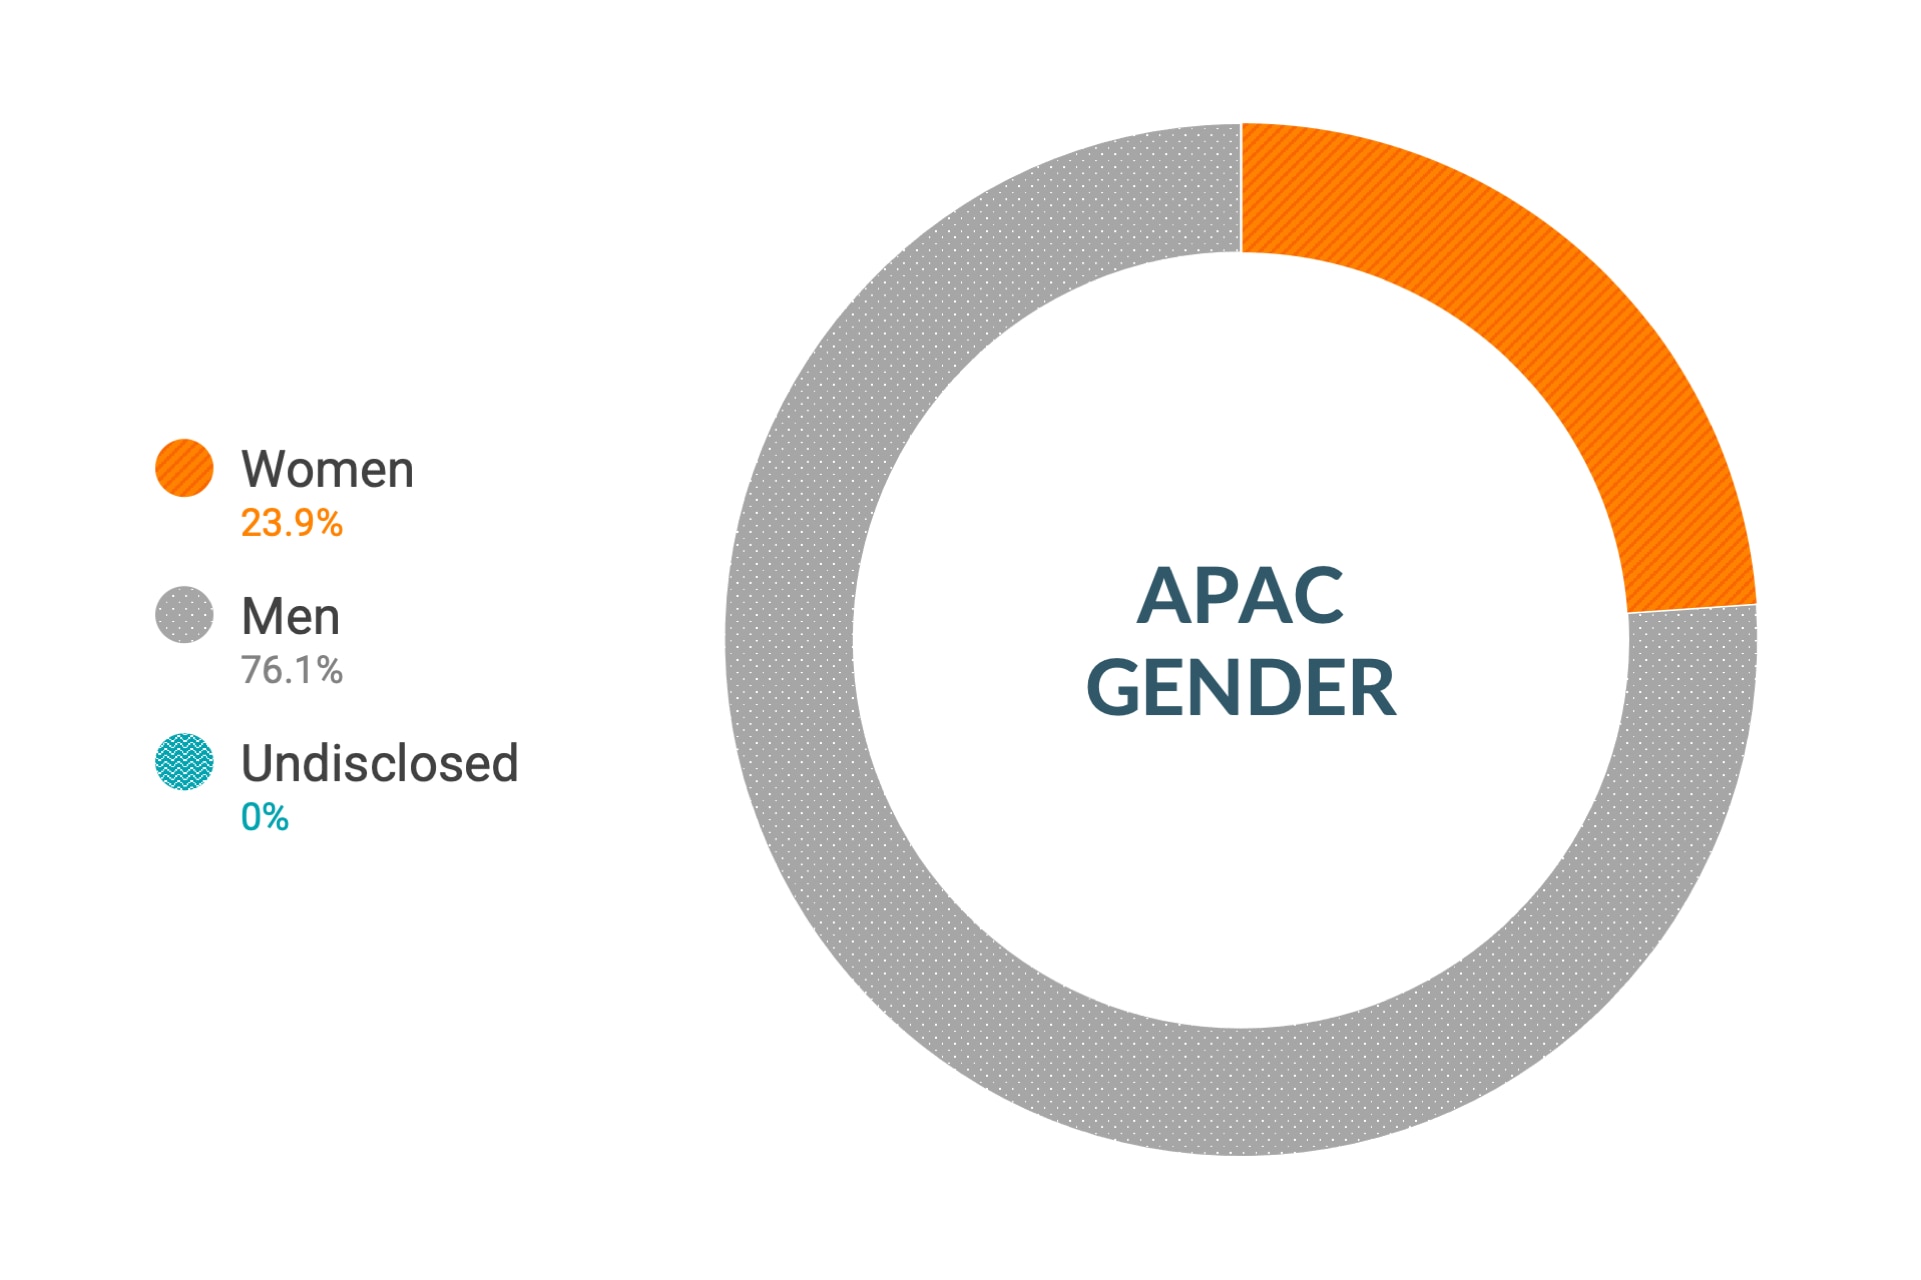 Dane firmy Cloudera dotyczące różnorodności i inkluzywności w kontekście płci w regionie APAC: kobiety 23,4%, mężczyźni 76,6%, nie ujawniono 0,0%